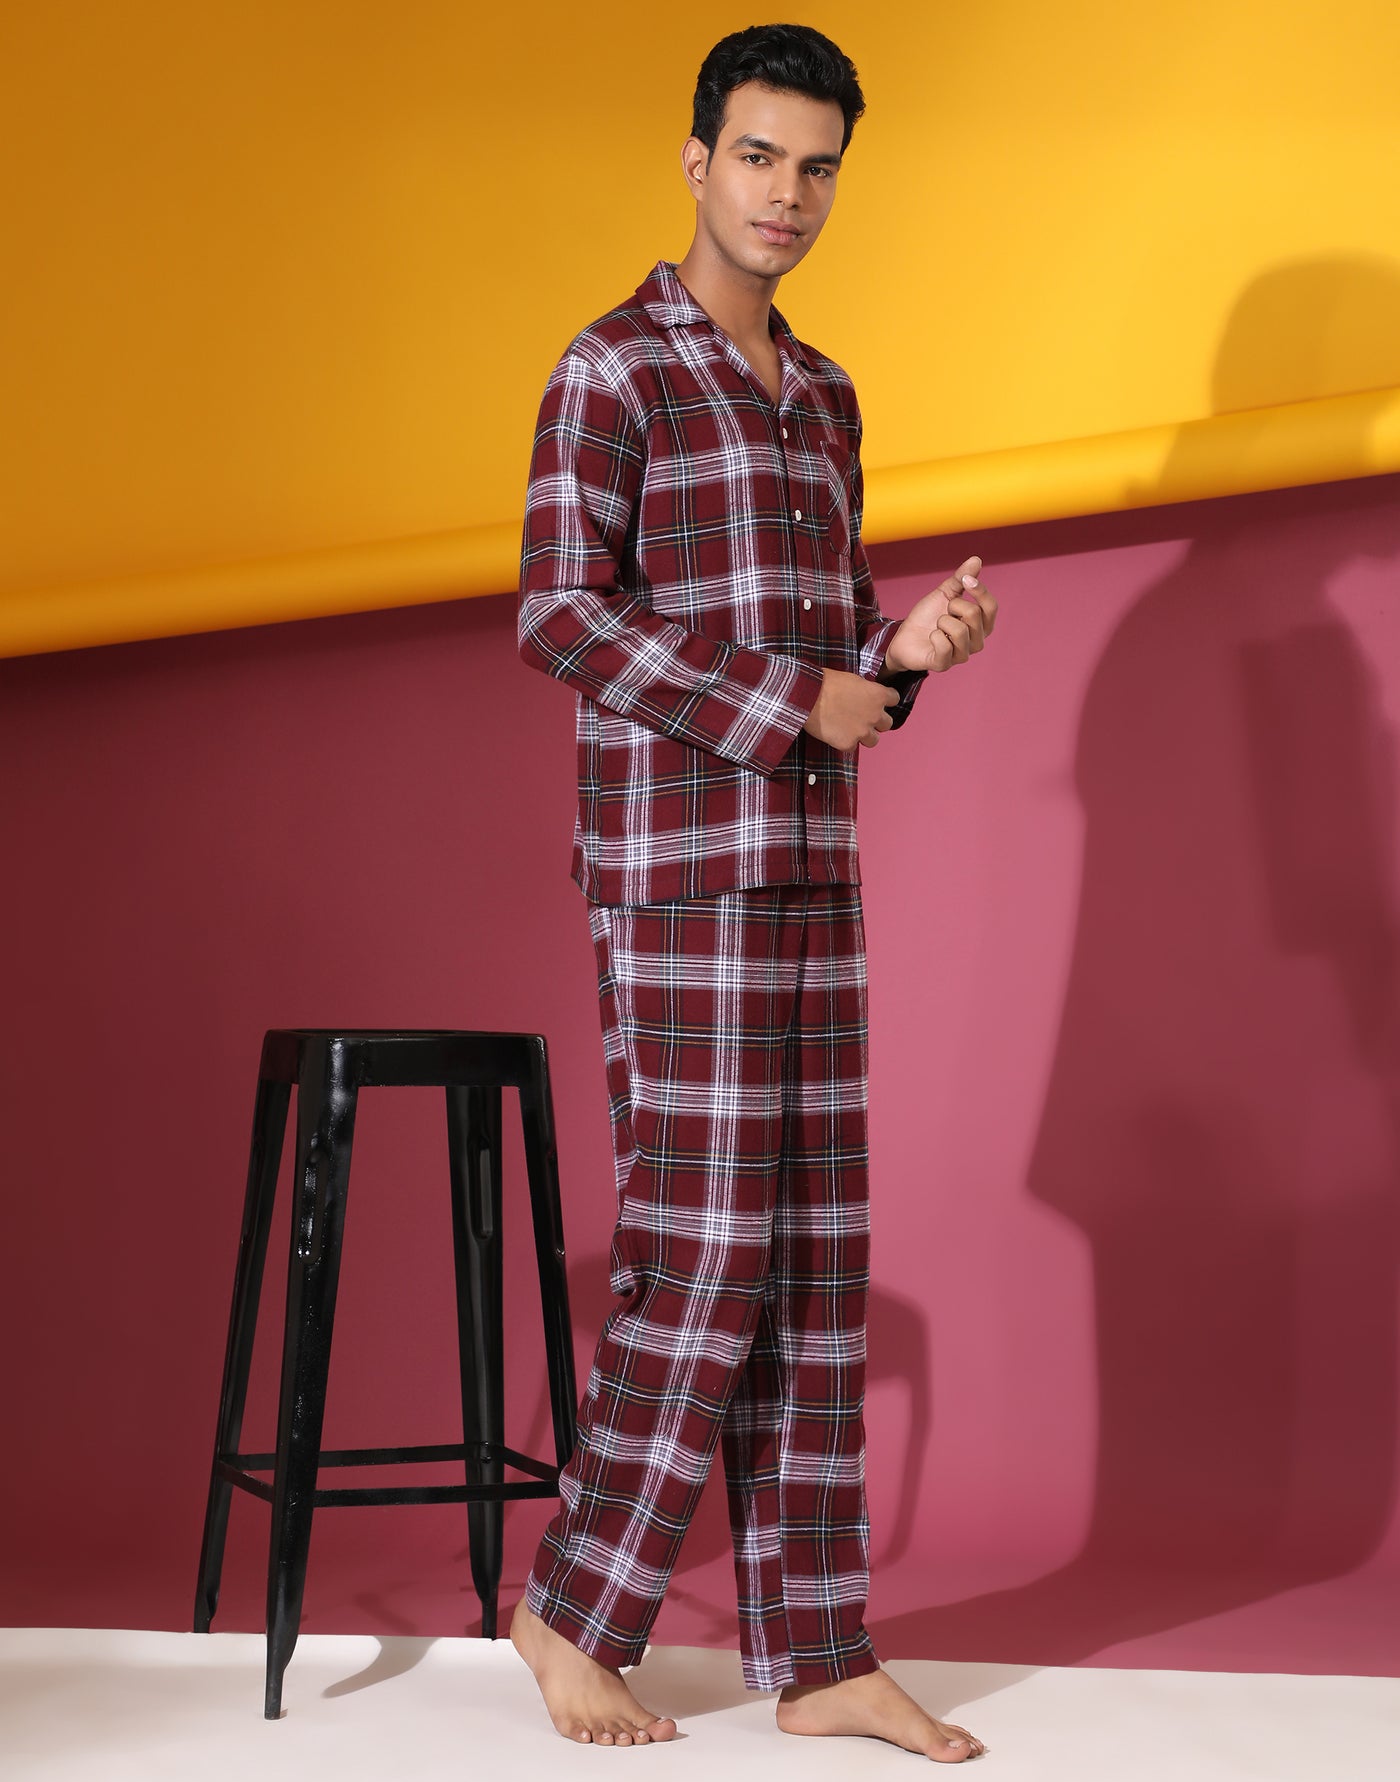 Pyjama Set for Men-Burgundy Plaid Checks